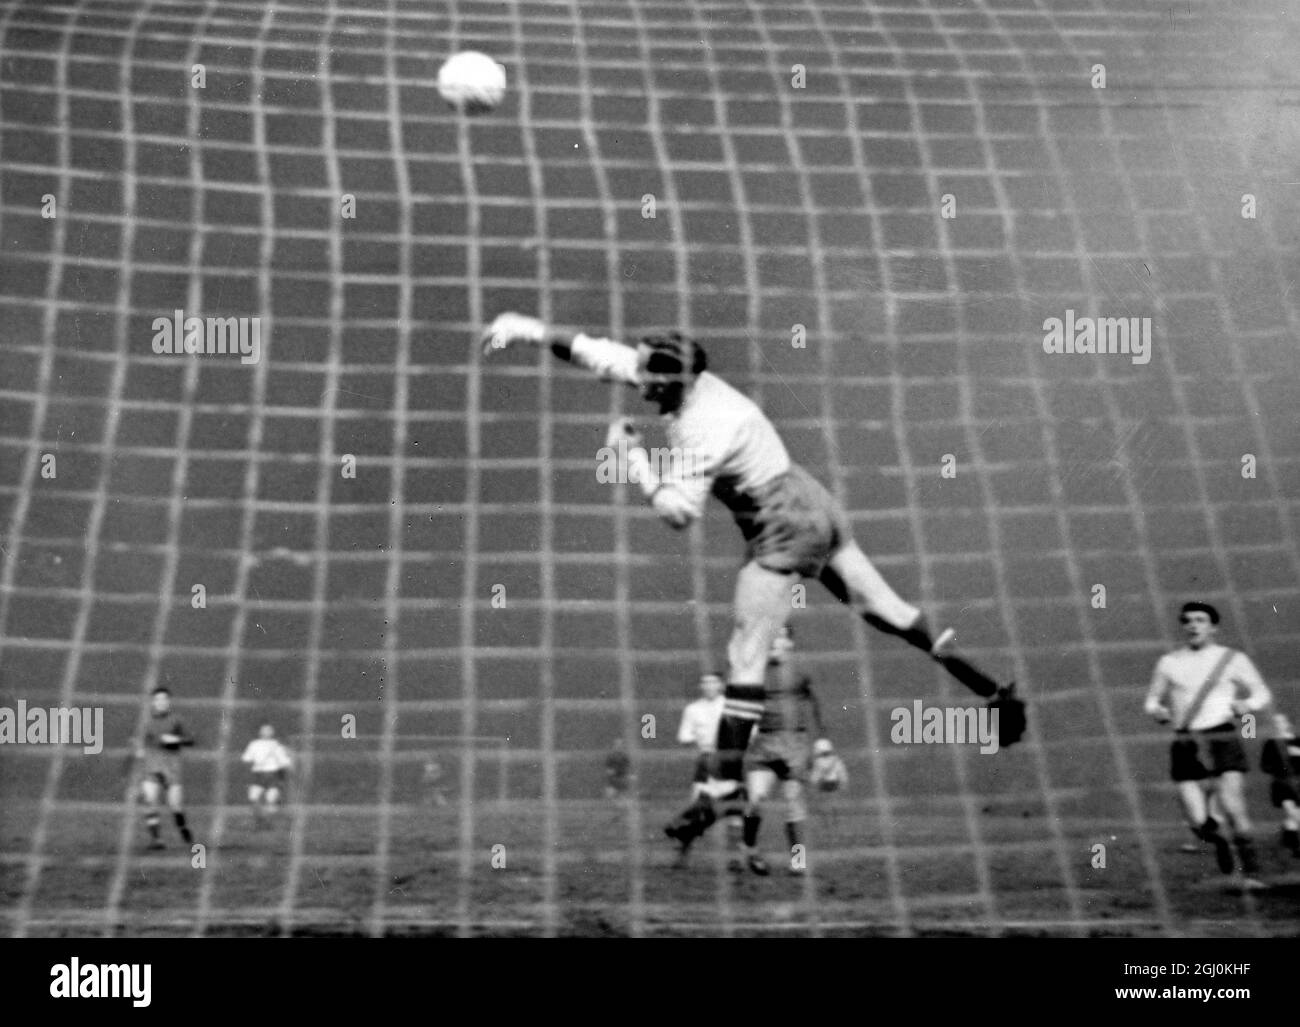 Glasgow: El portero celta Simpson se despeja de Trivic (derecha), de Vojvodina Novi Sad (Yugoslavia) durante la Copa de Campeones de Europa cuarto de final matemáticas aquí anoche. Celtic ganó el partido por dos goles a cero. 9 de marzo de 1967 Foto de stock